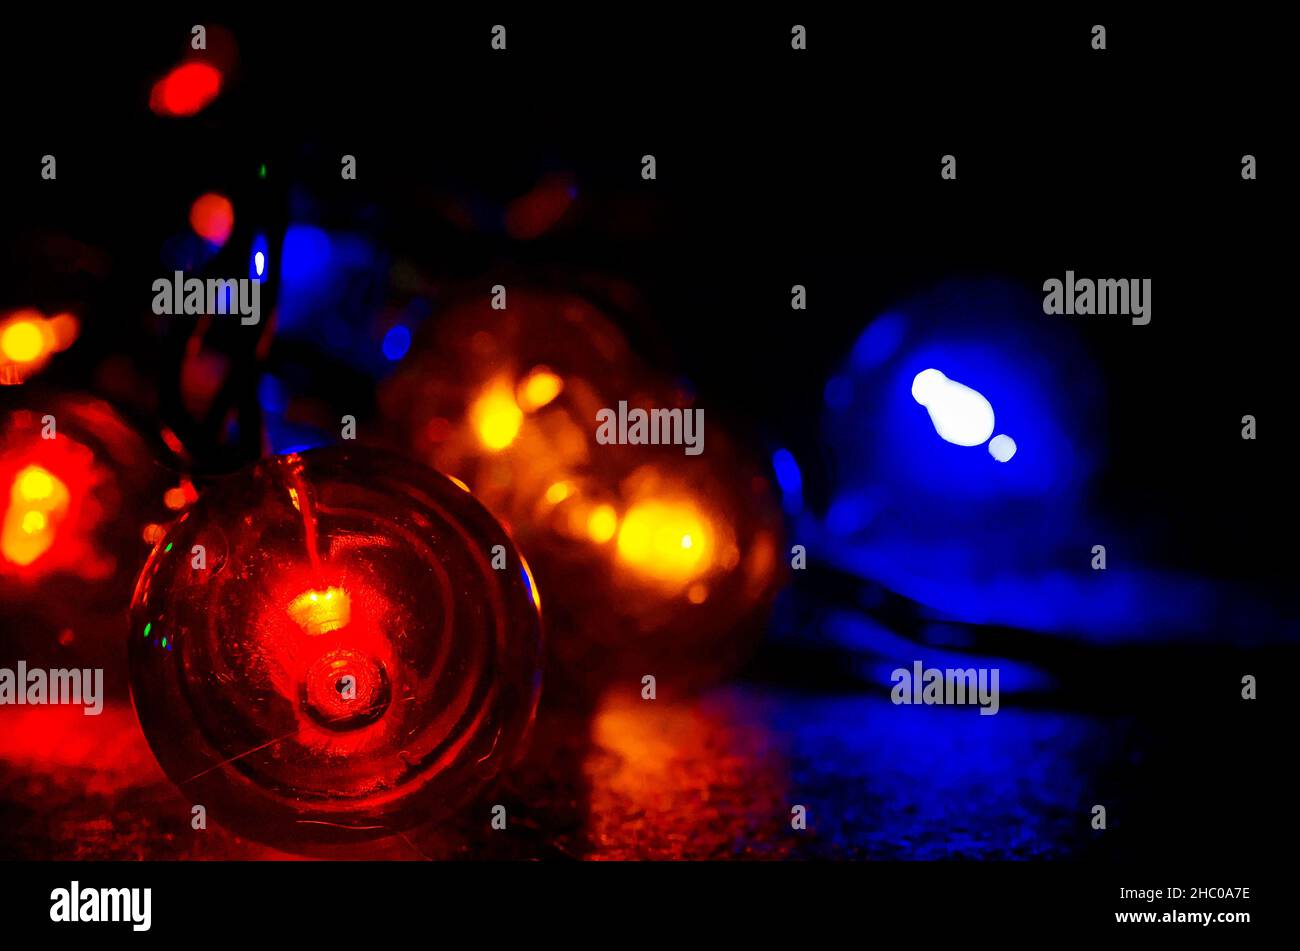 Farbige Globenlichter lagen am 27. Dezember 2017 in CODEN, Alabama, auf einem Tisch. Globe-Style-Leuchten können innen oder außen für einen festlichen Touch verwendet werden. Stockfoto